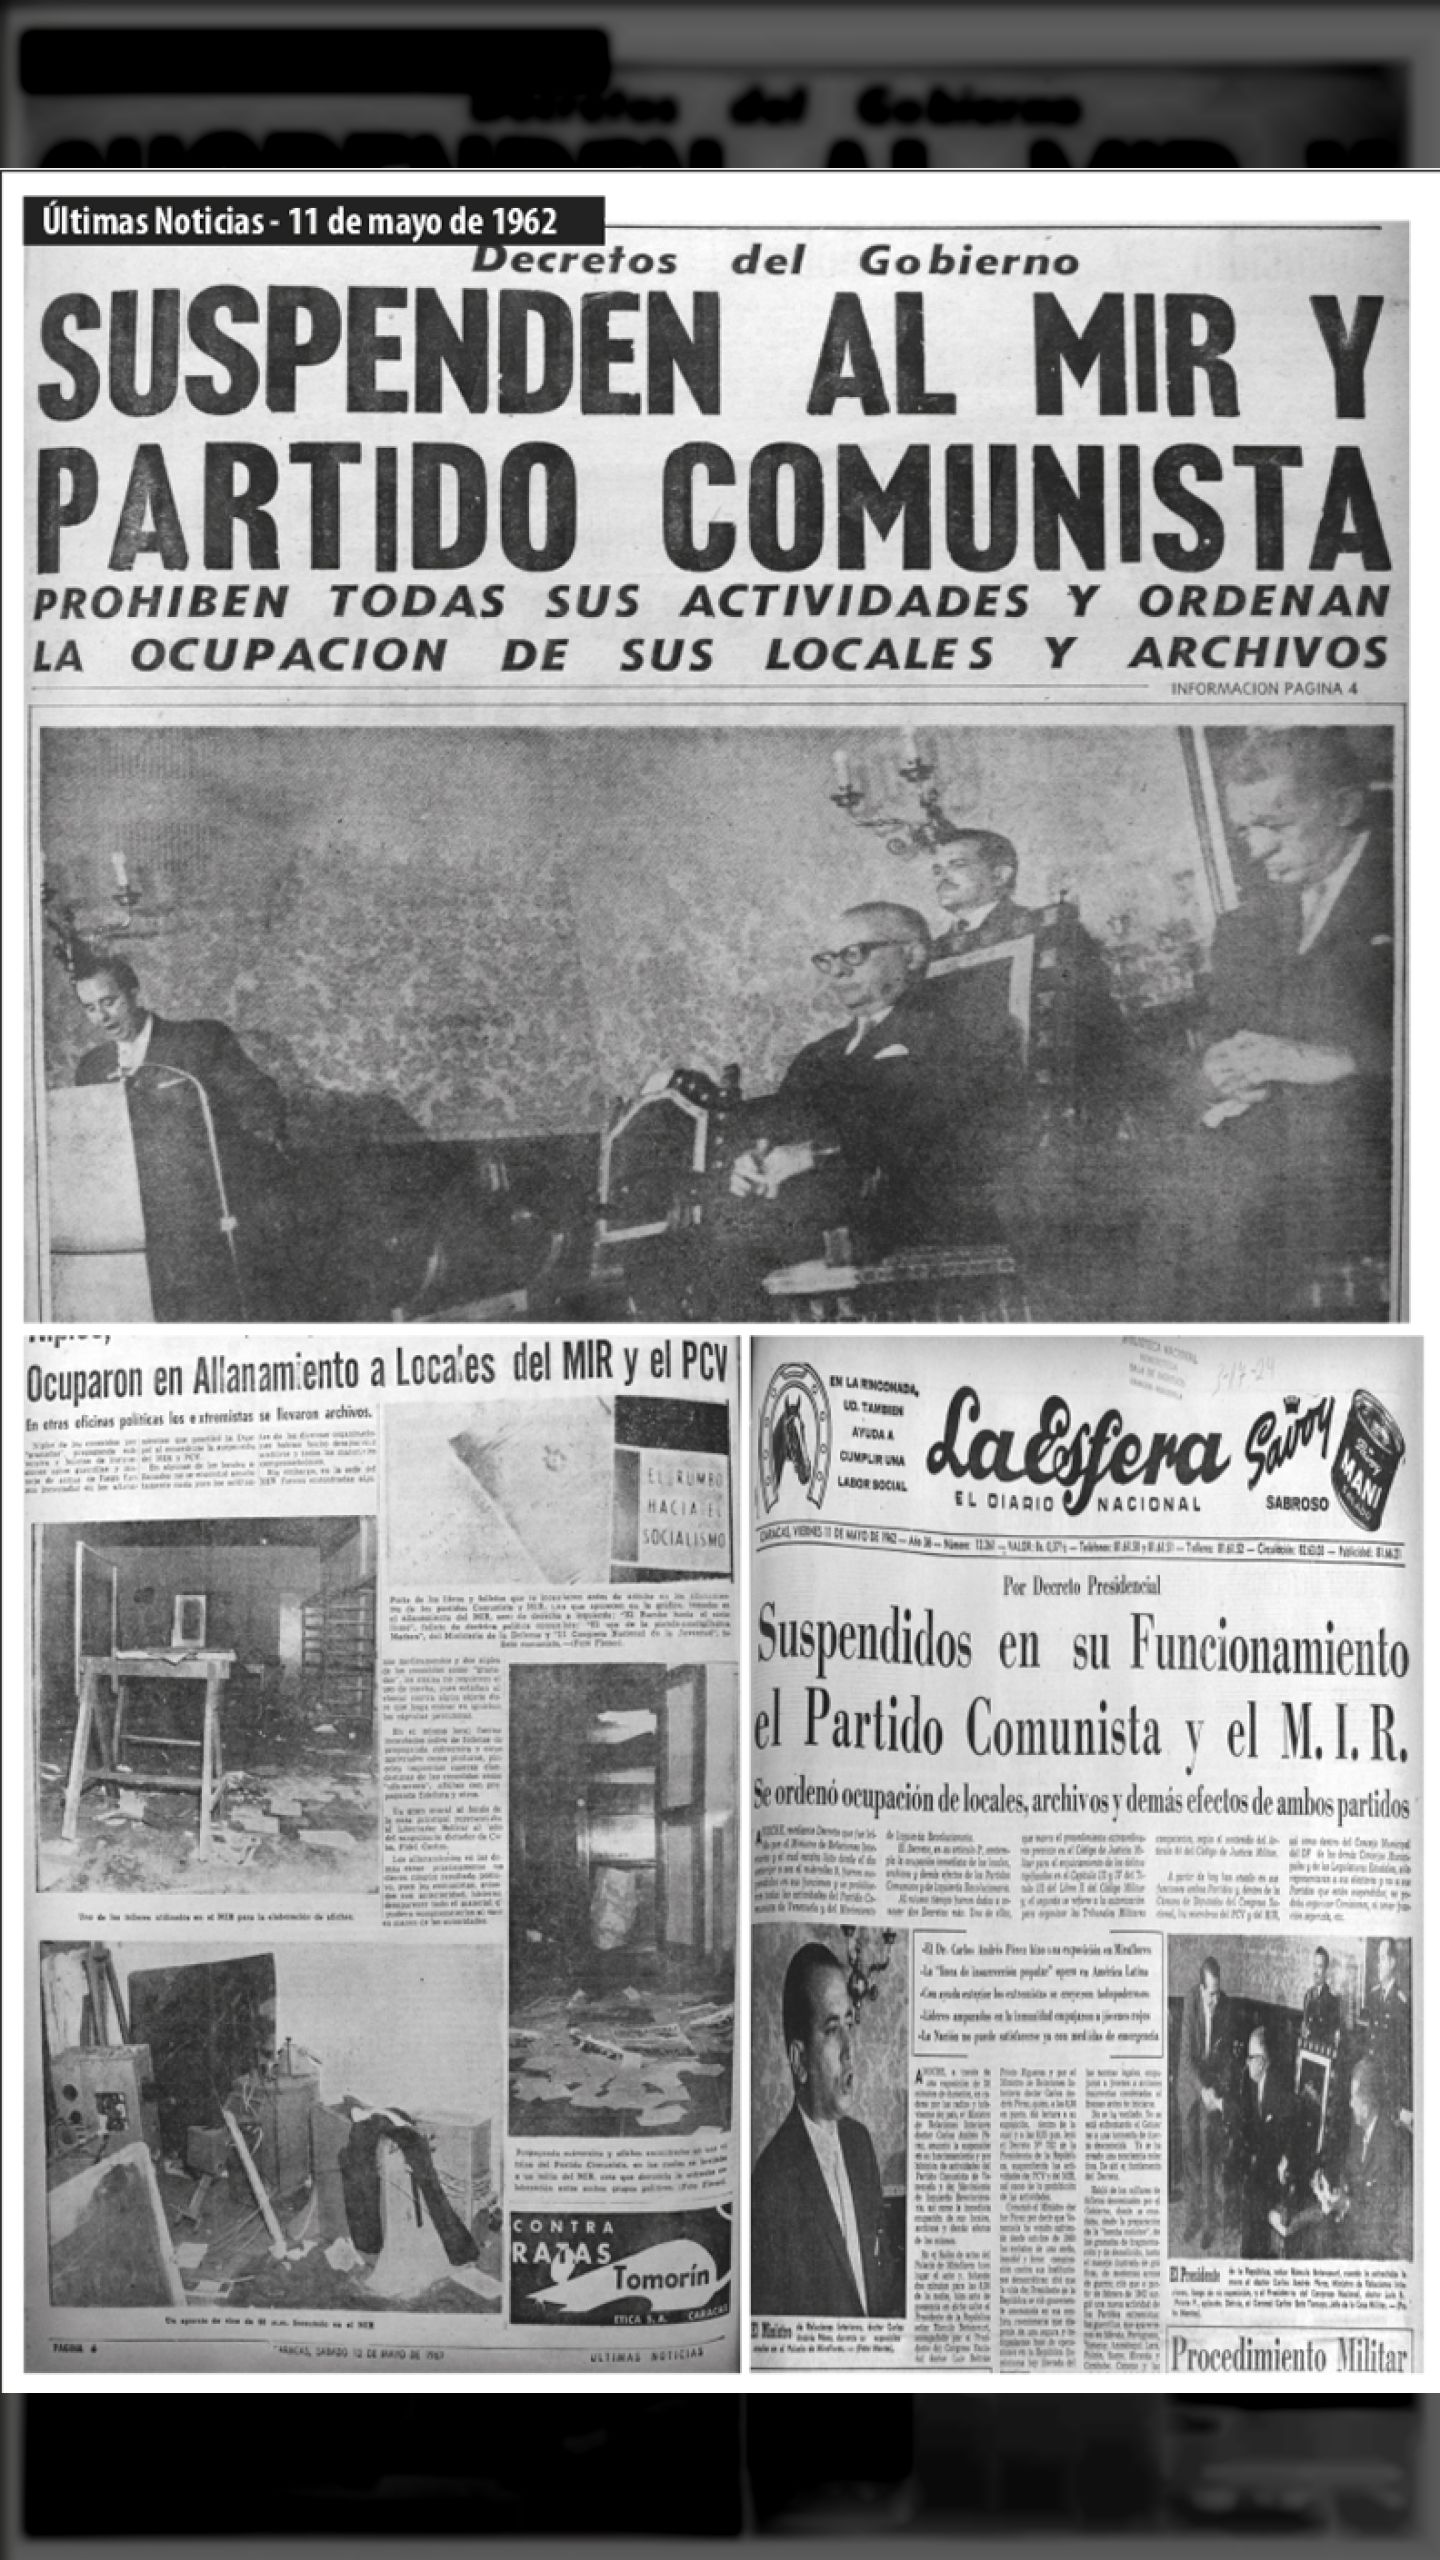 Son ilegalizados el PCV-MIR (Últimas Noticias y La Esfera, 11 de mayo 1962)